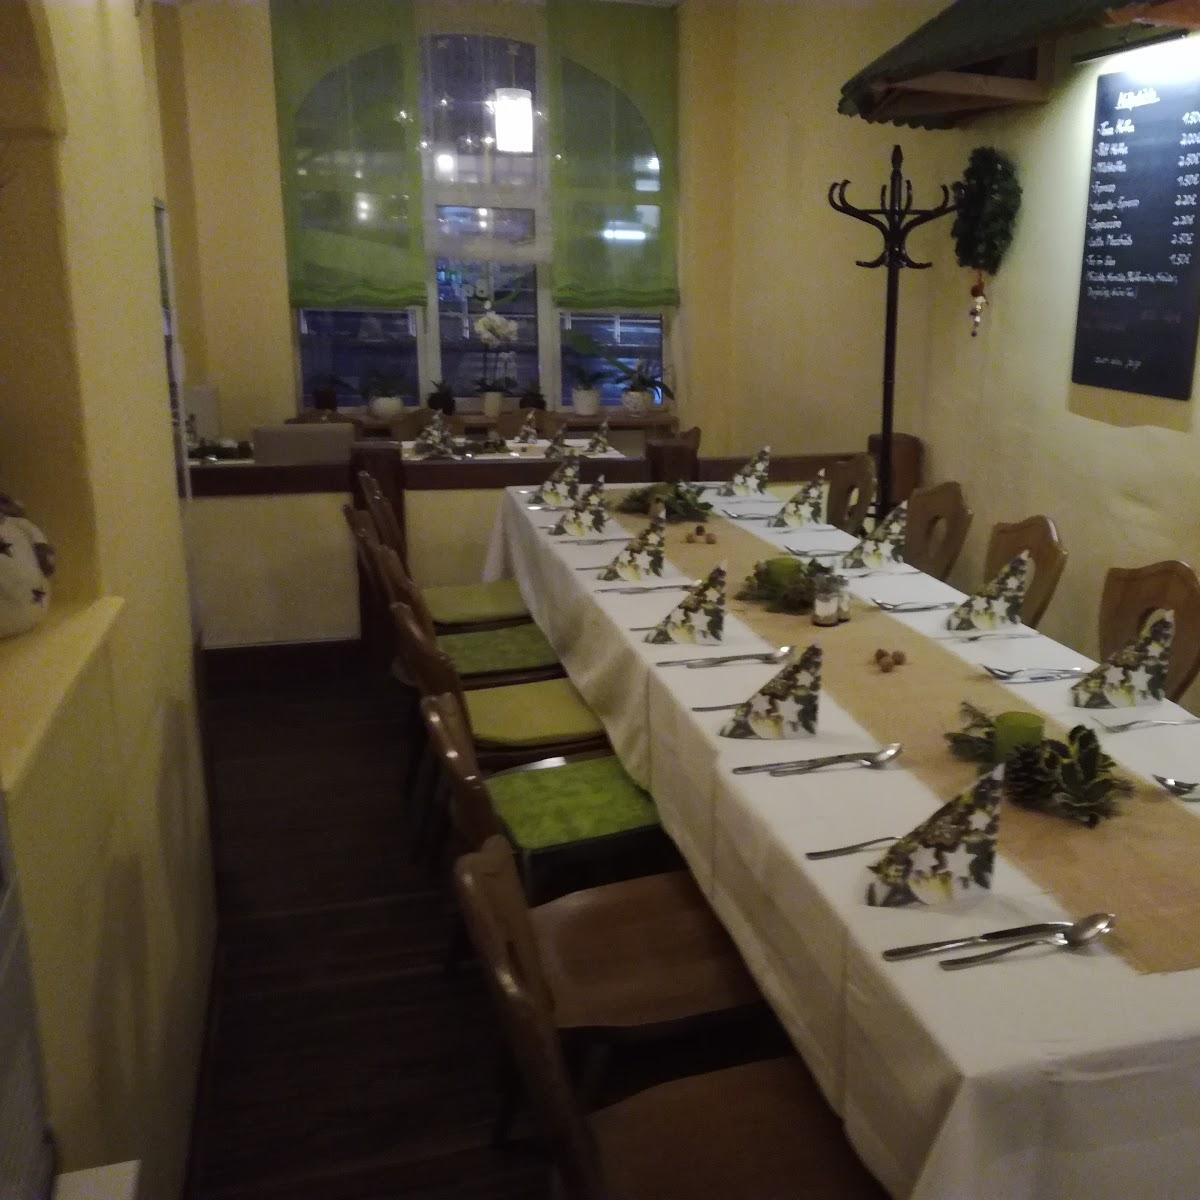 Restaurant "Die Suppenbar" in Gera